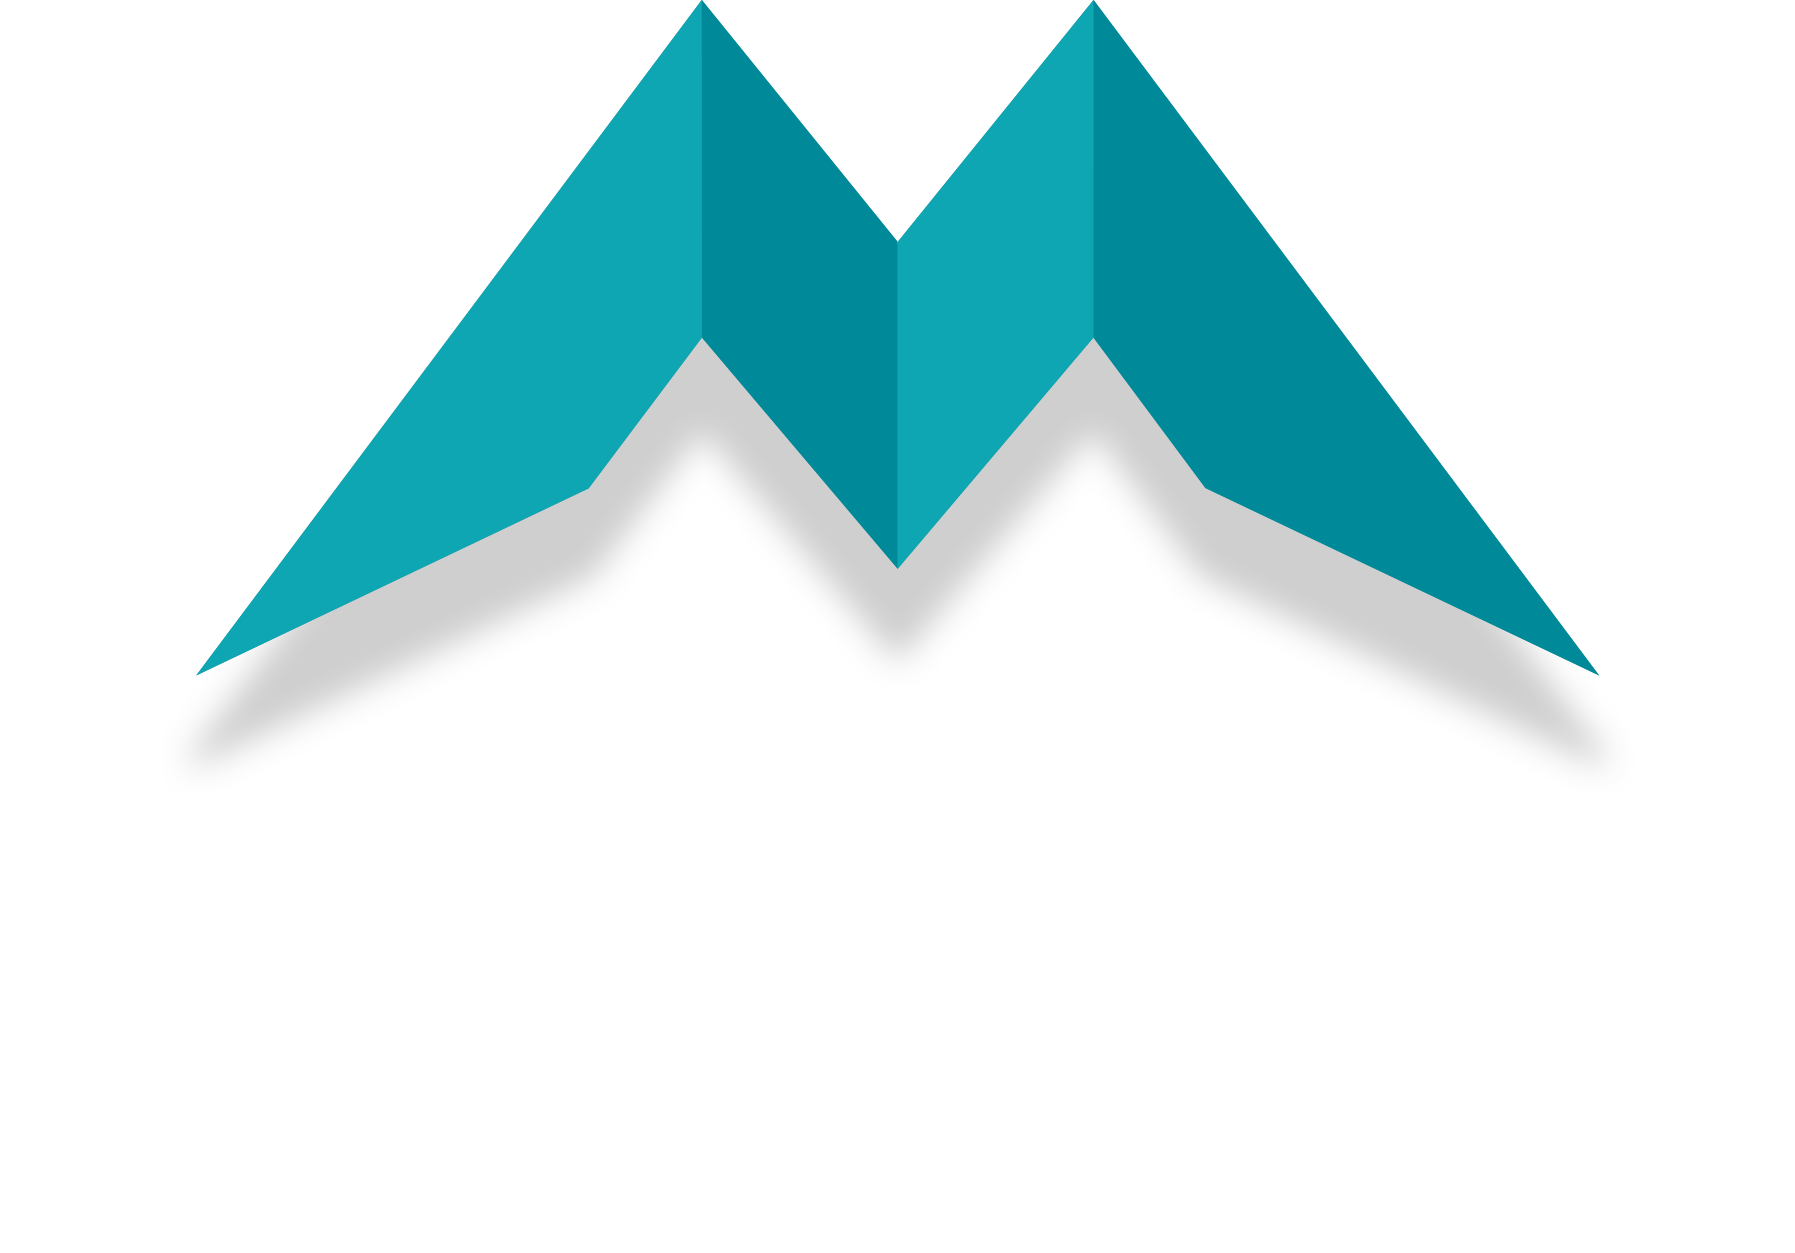 Marina Bueno